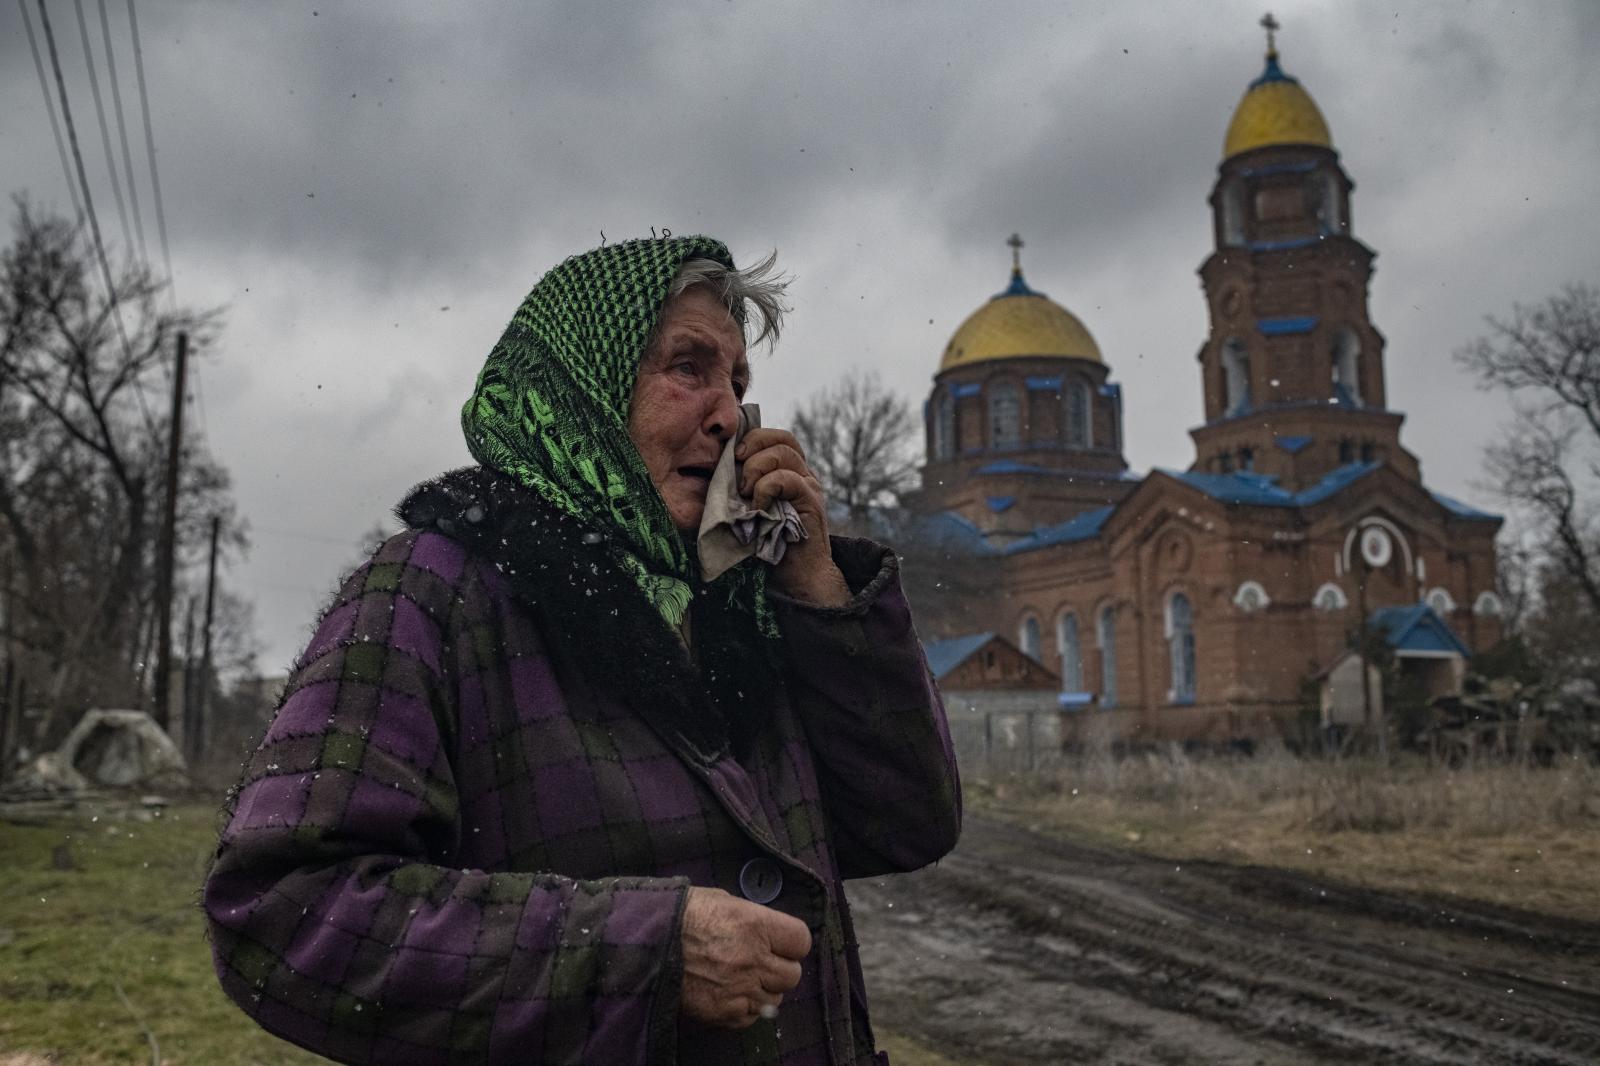 The Grief, Ukraine